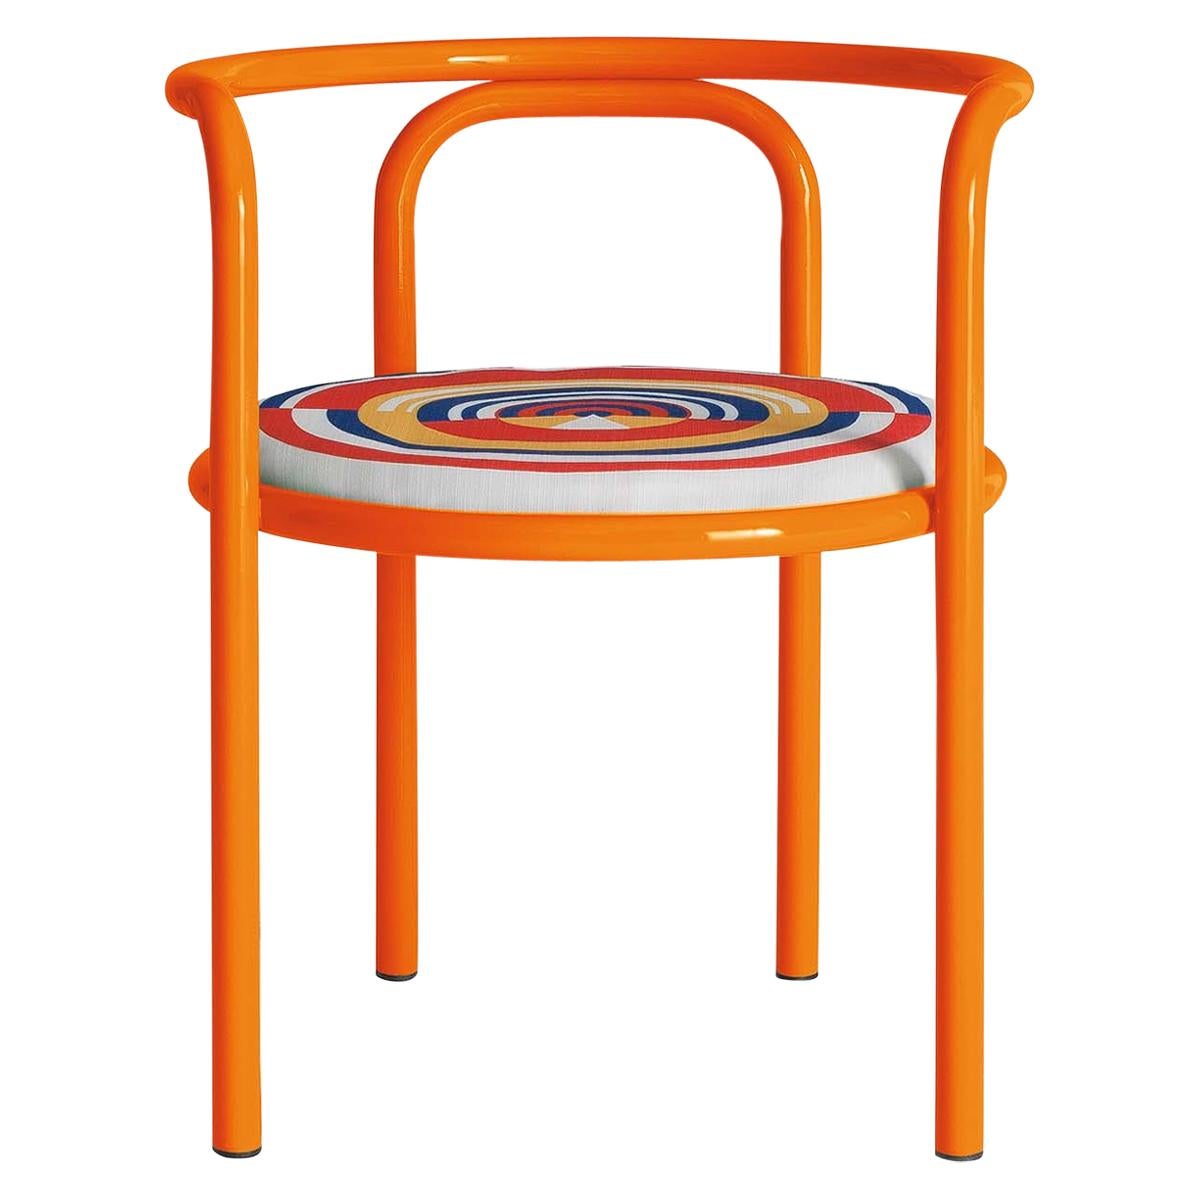 Locus Solus Orange Chair by Gae Aulenti For Sale